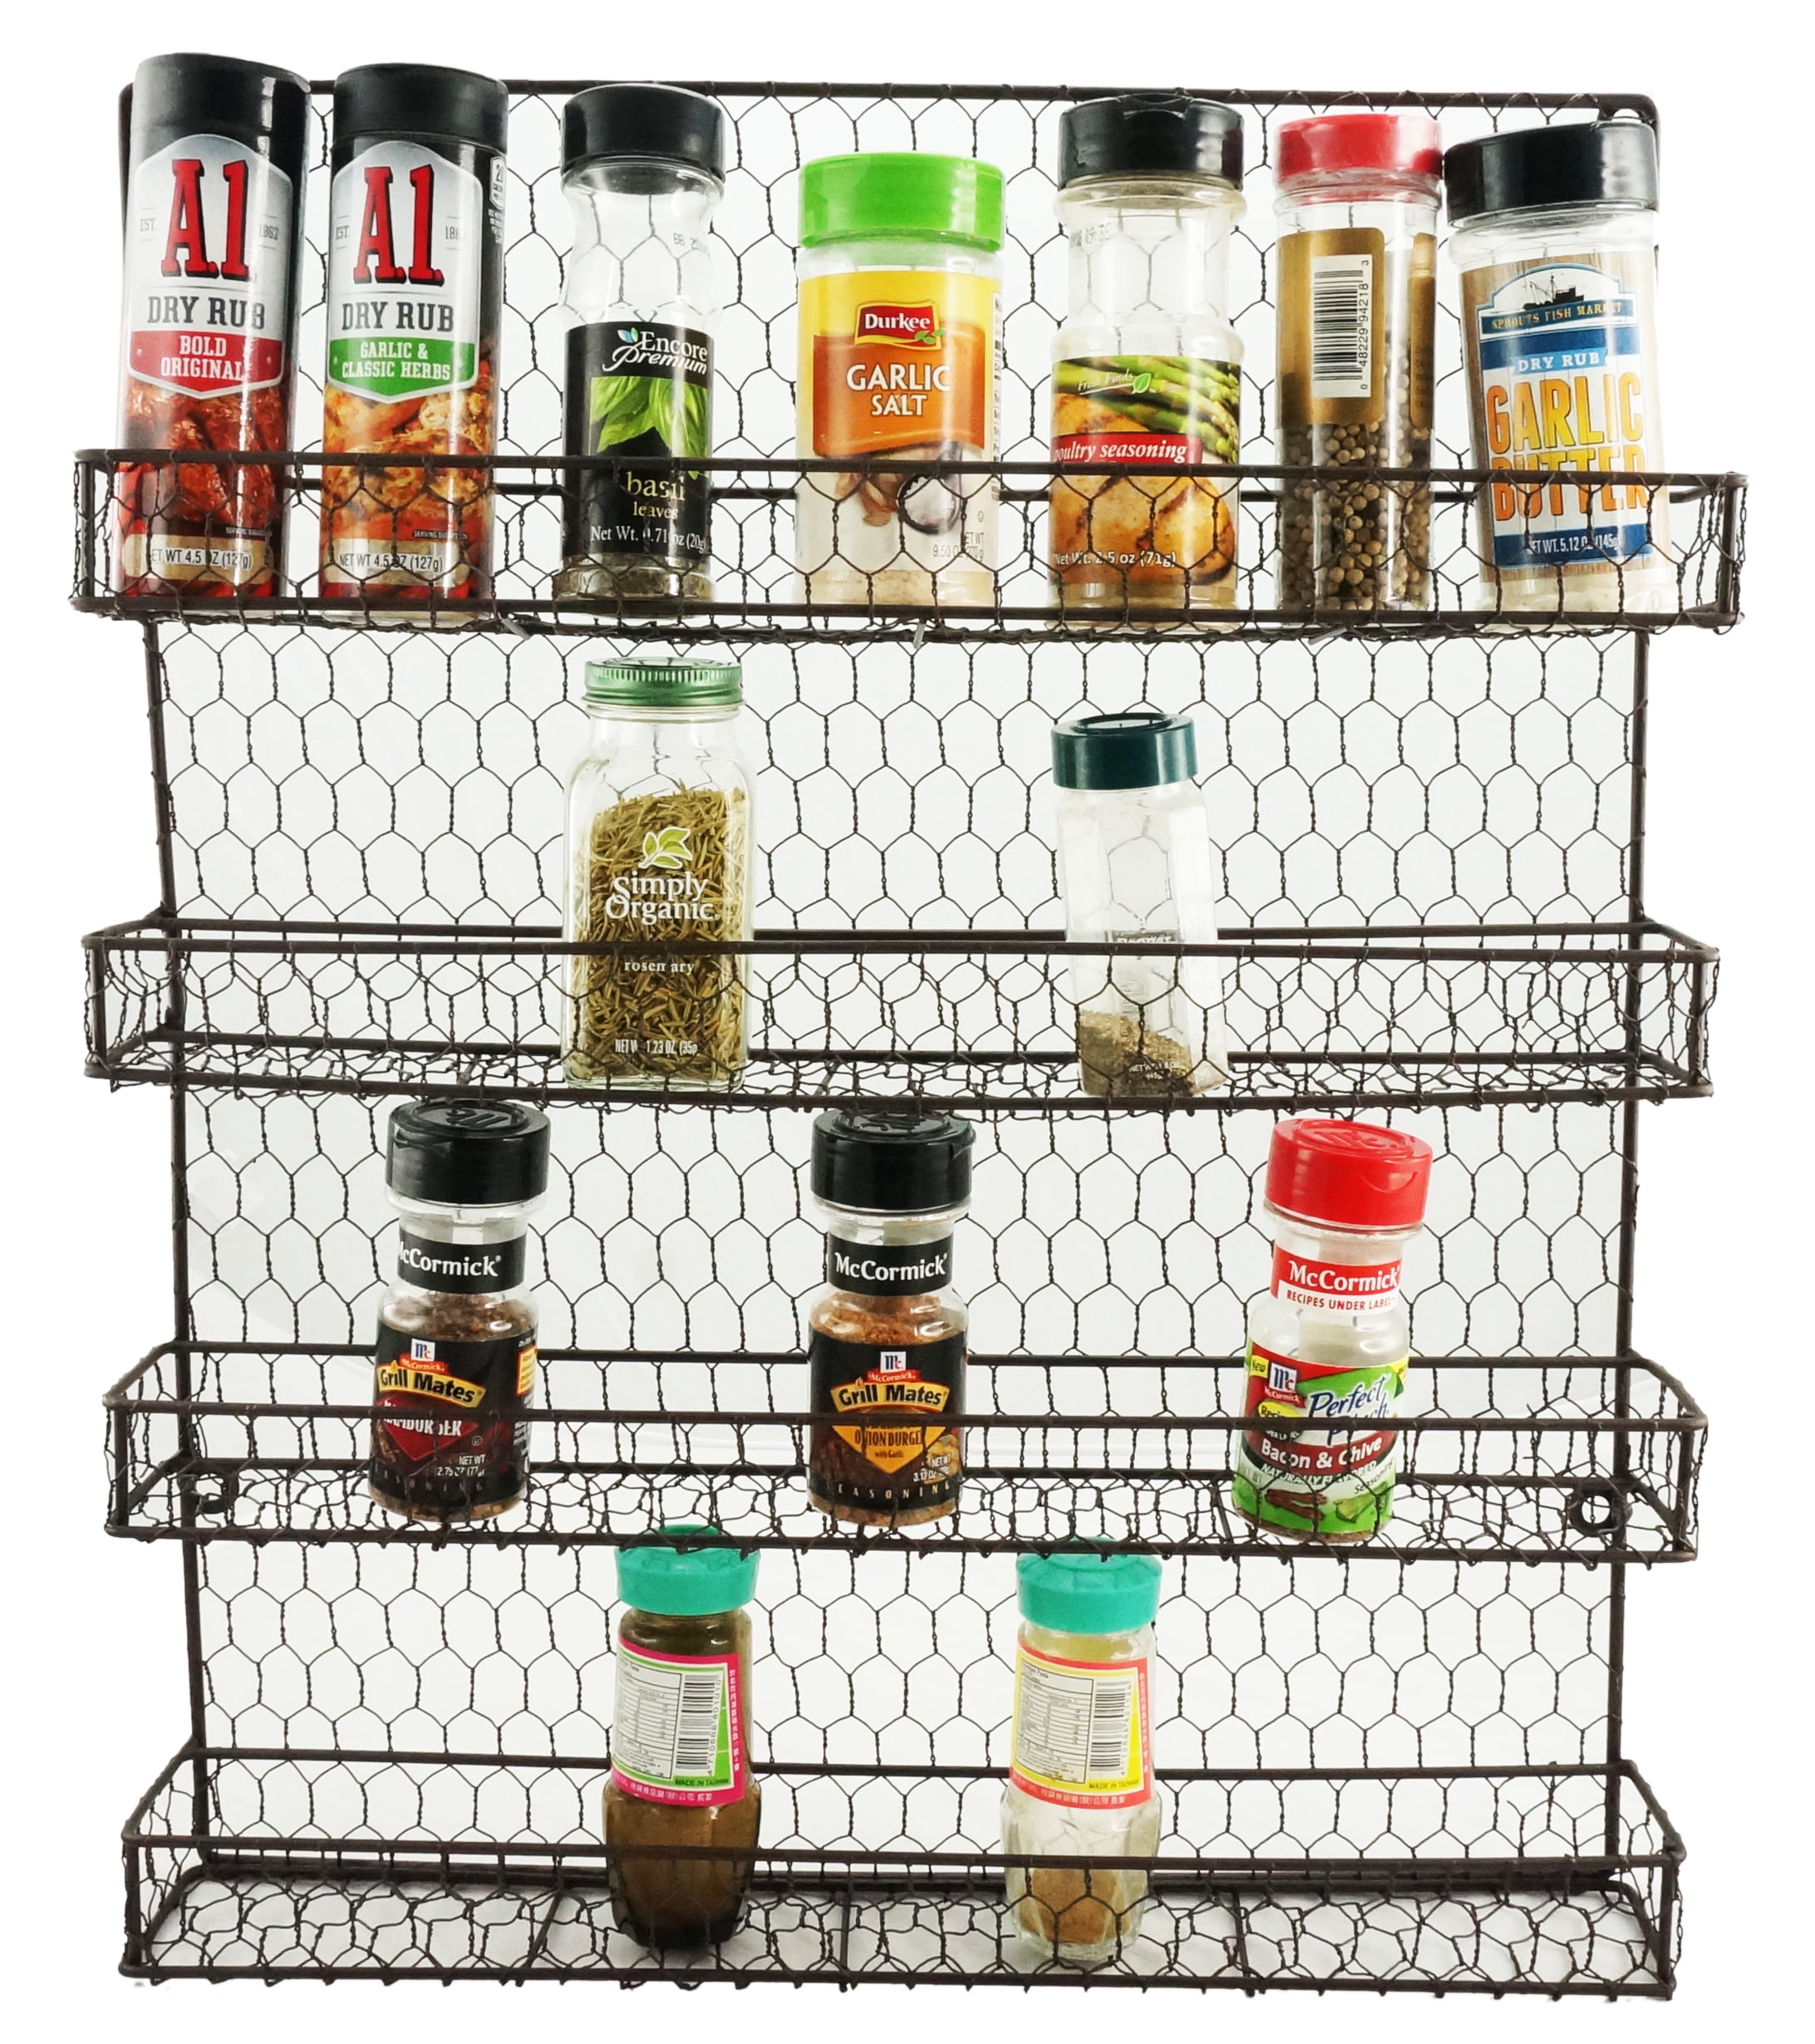 Wall Mount Spice Rack Organize Spice Shelf Seasoning Organizer Spice Storage